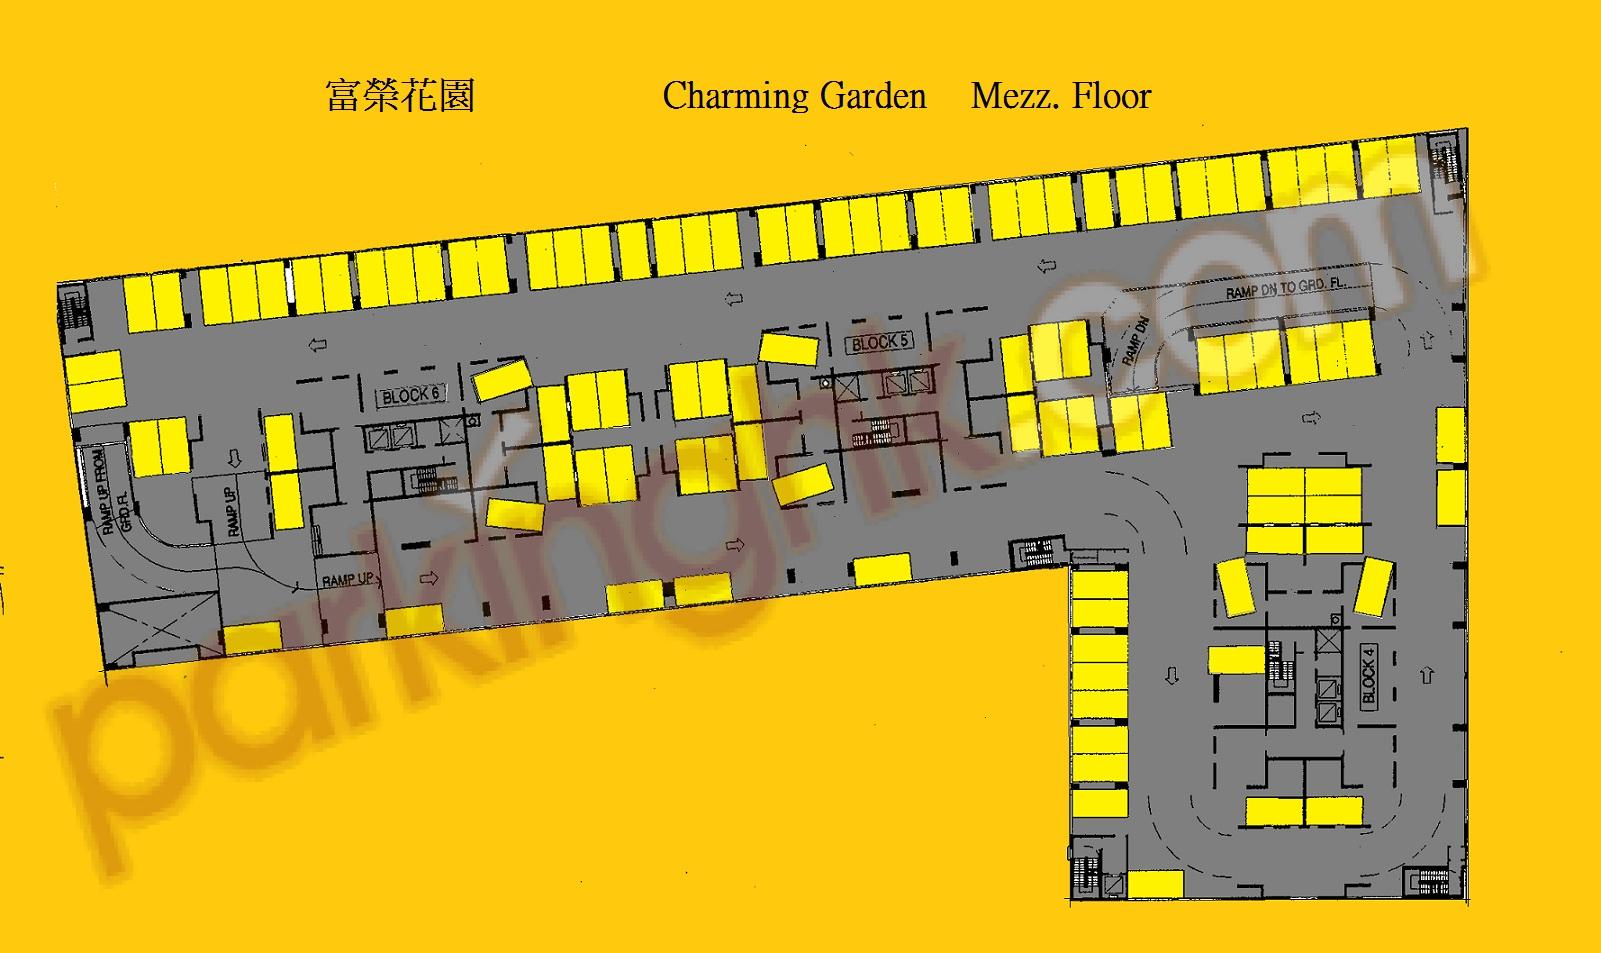  Cheung Shan Wan Carpark  Cheung Sha Wan Road  Charming Garden  Floor plan 香港車位.com ParkingHK.com